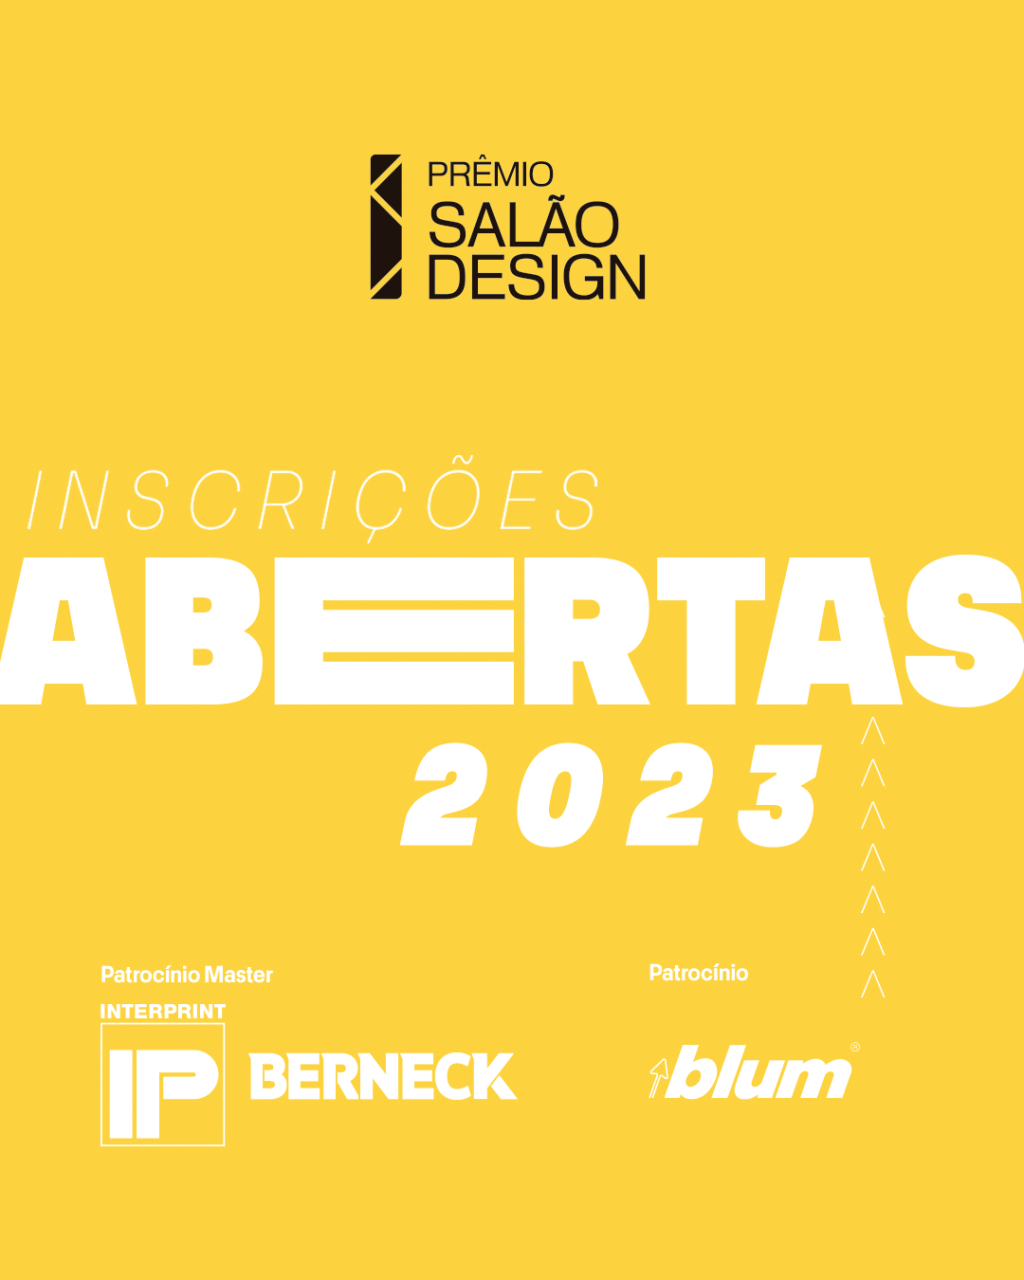 Prêmio Salão Design 2023 últimos dias inscrição